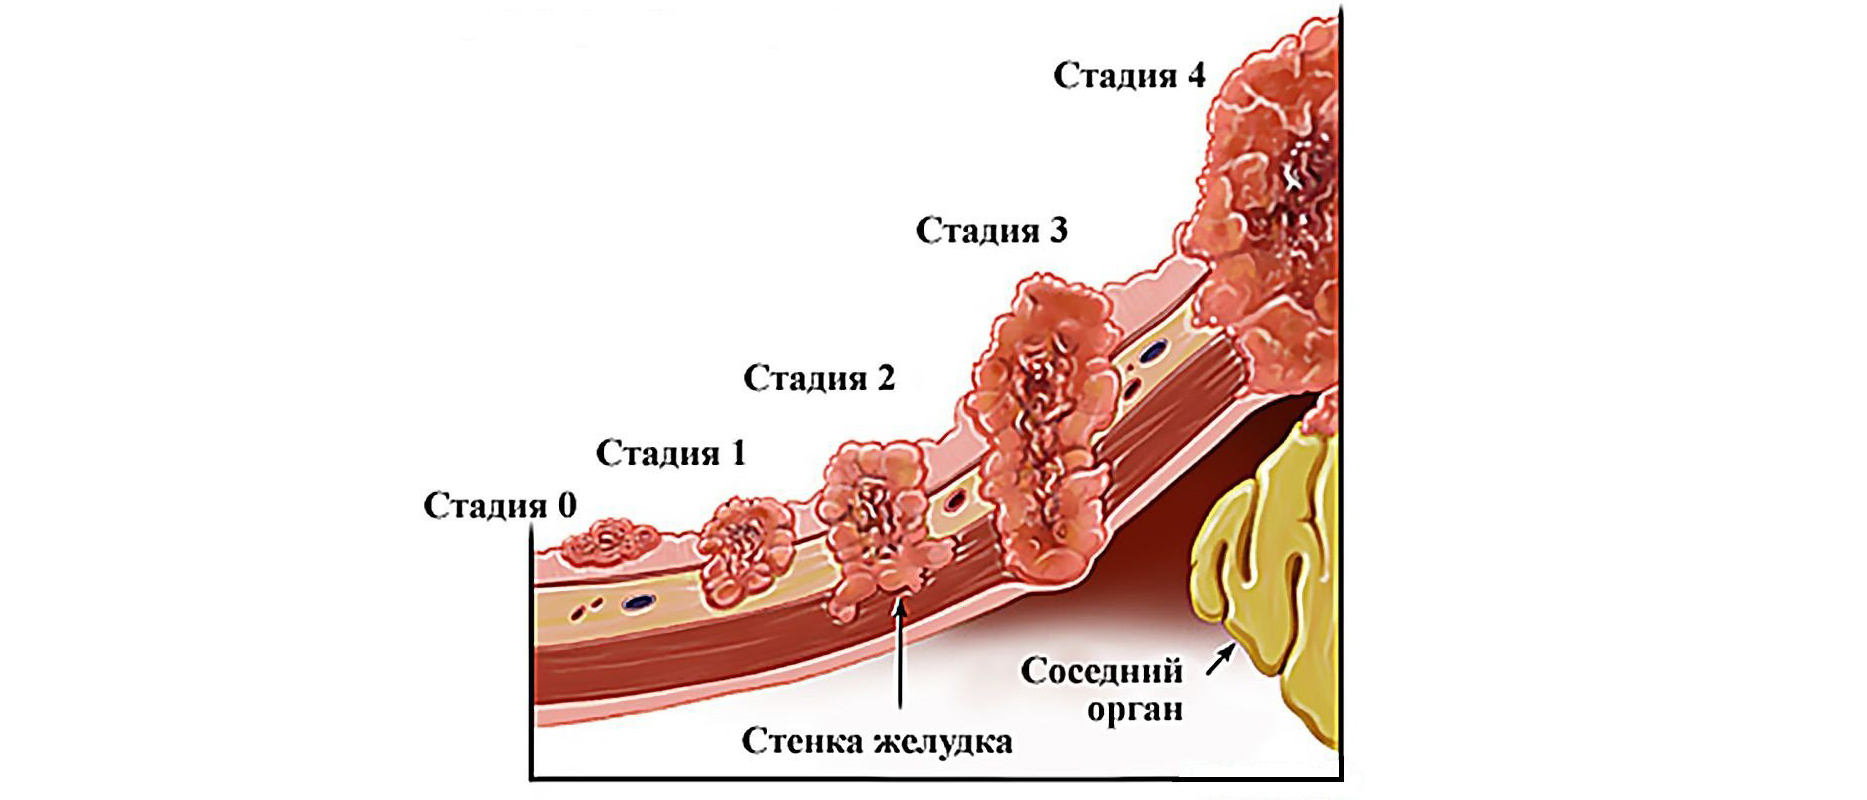 Рак 4 стадия сколько живут форум. Стадии развития опухоли желудка. 3 Стадии развития опухоли. Степени онкологии желудка.